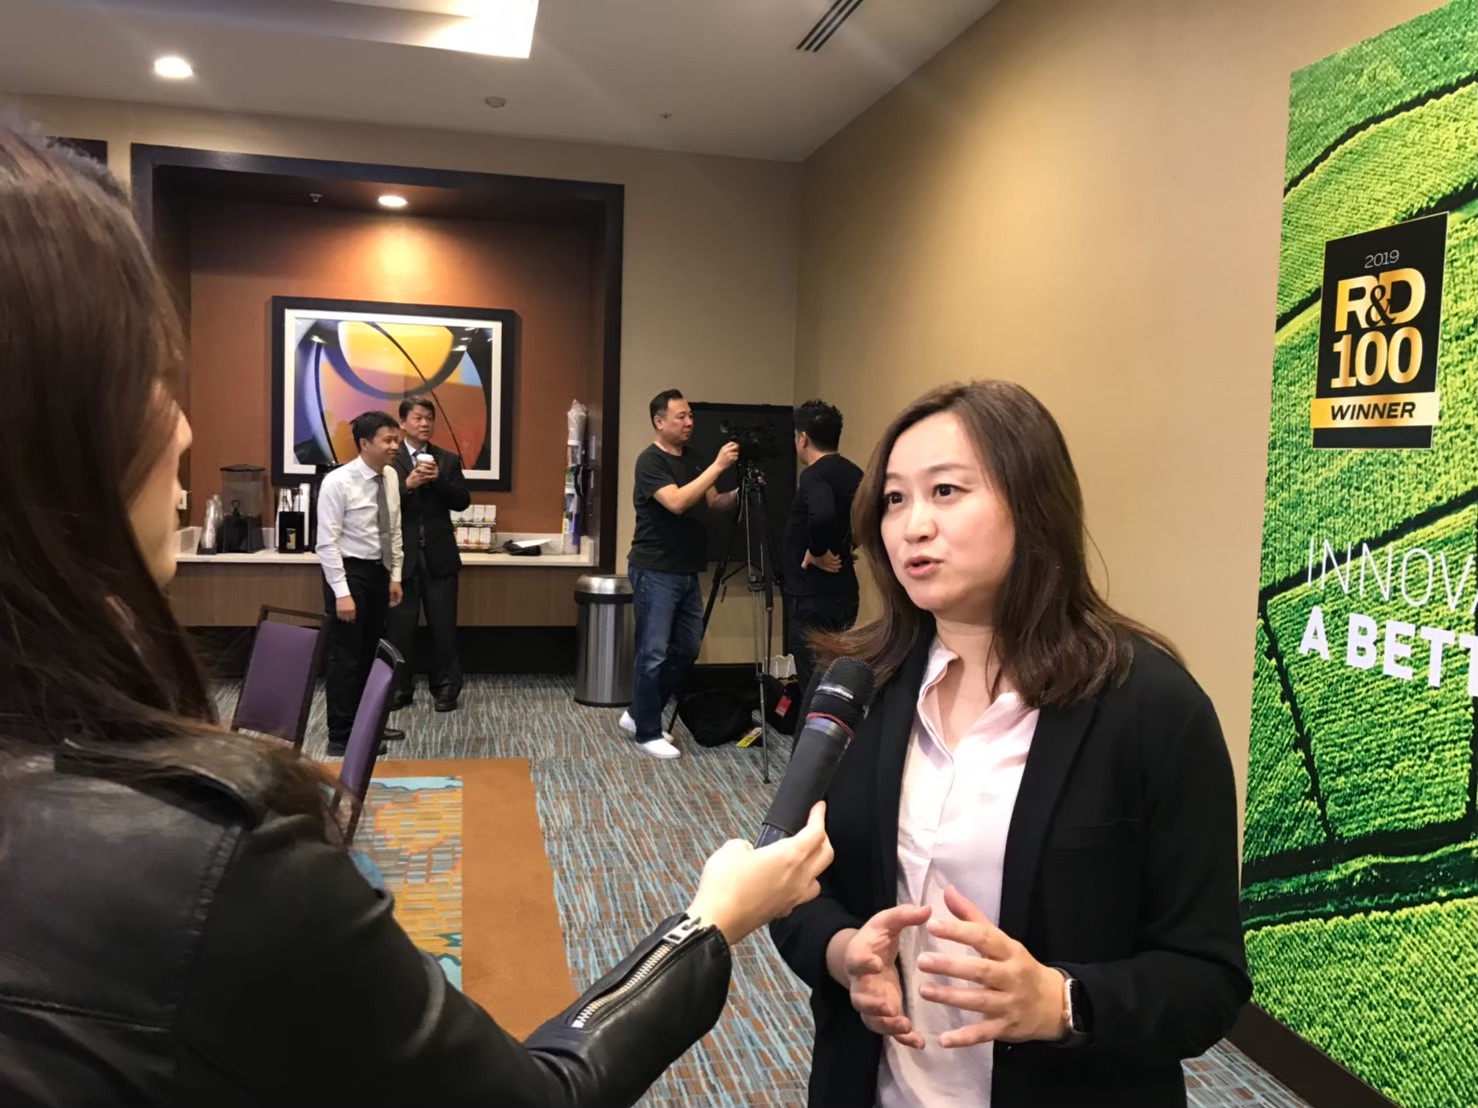 江佩馨副組長於舊金山華文媒體記者會接受媒體採訪說明磁珠技術特點